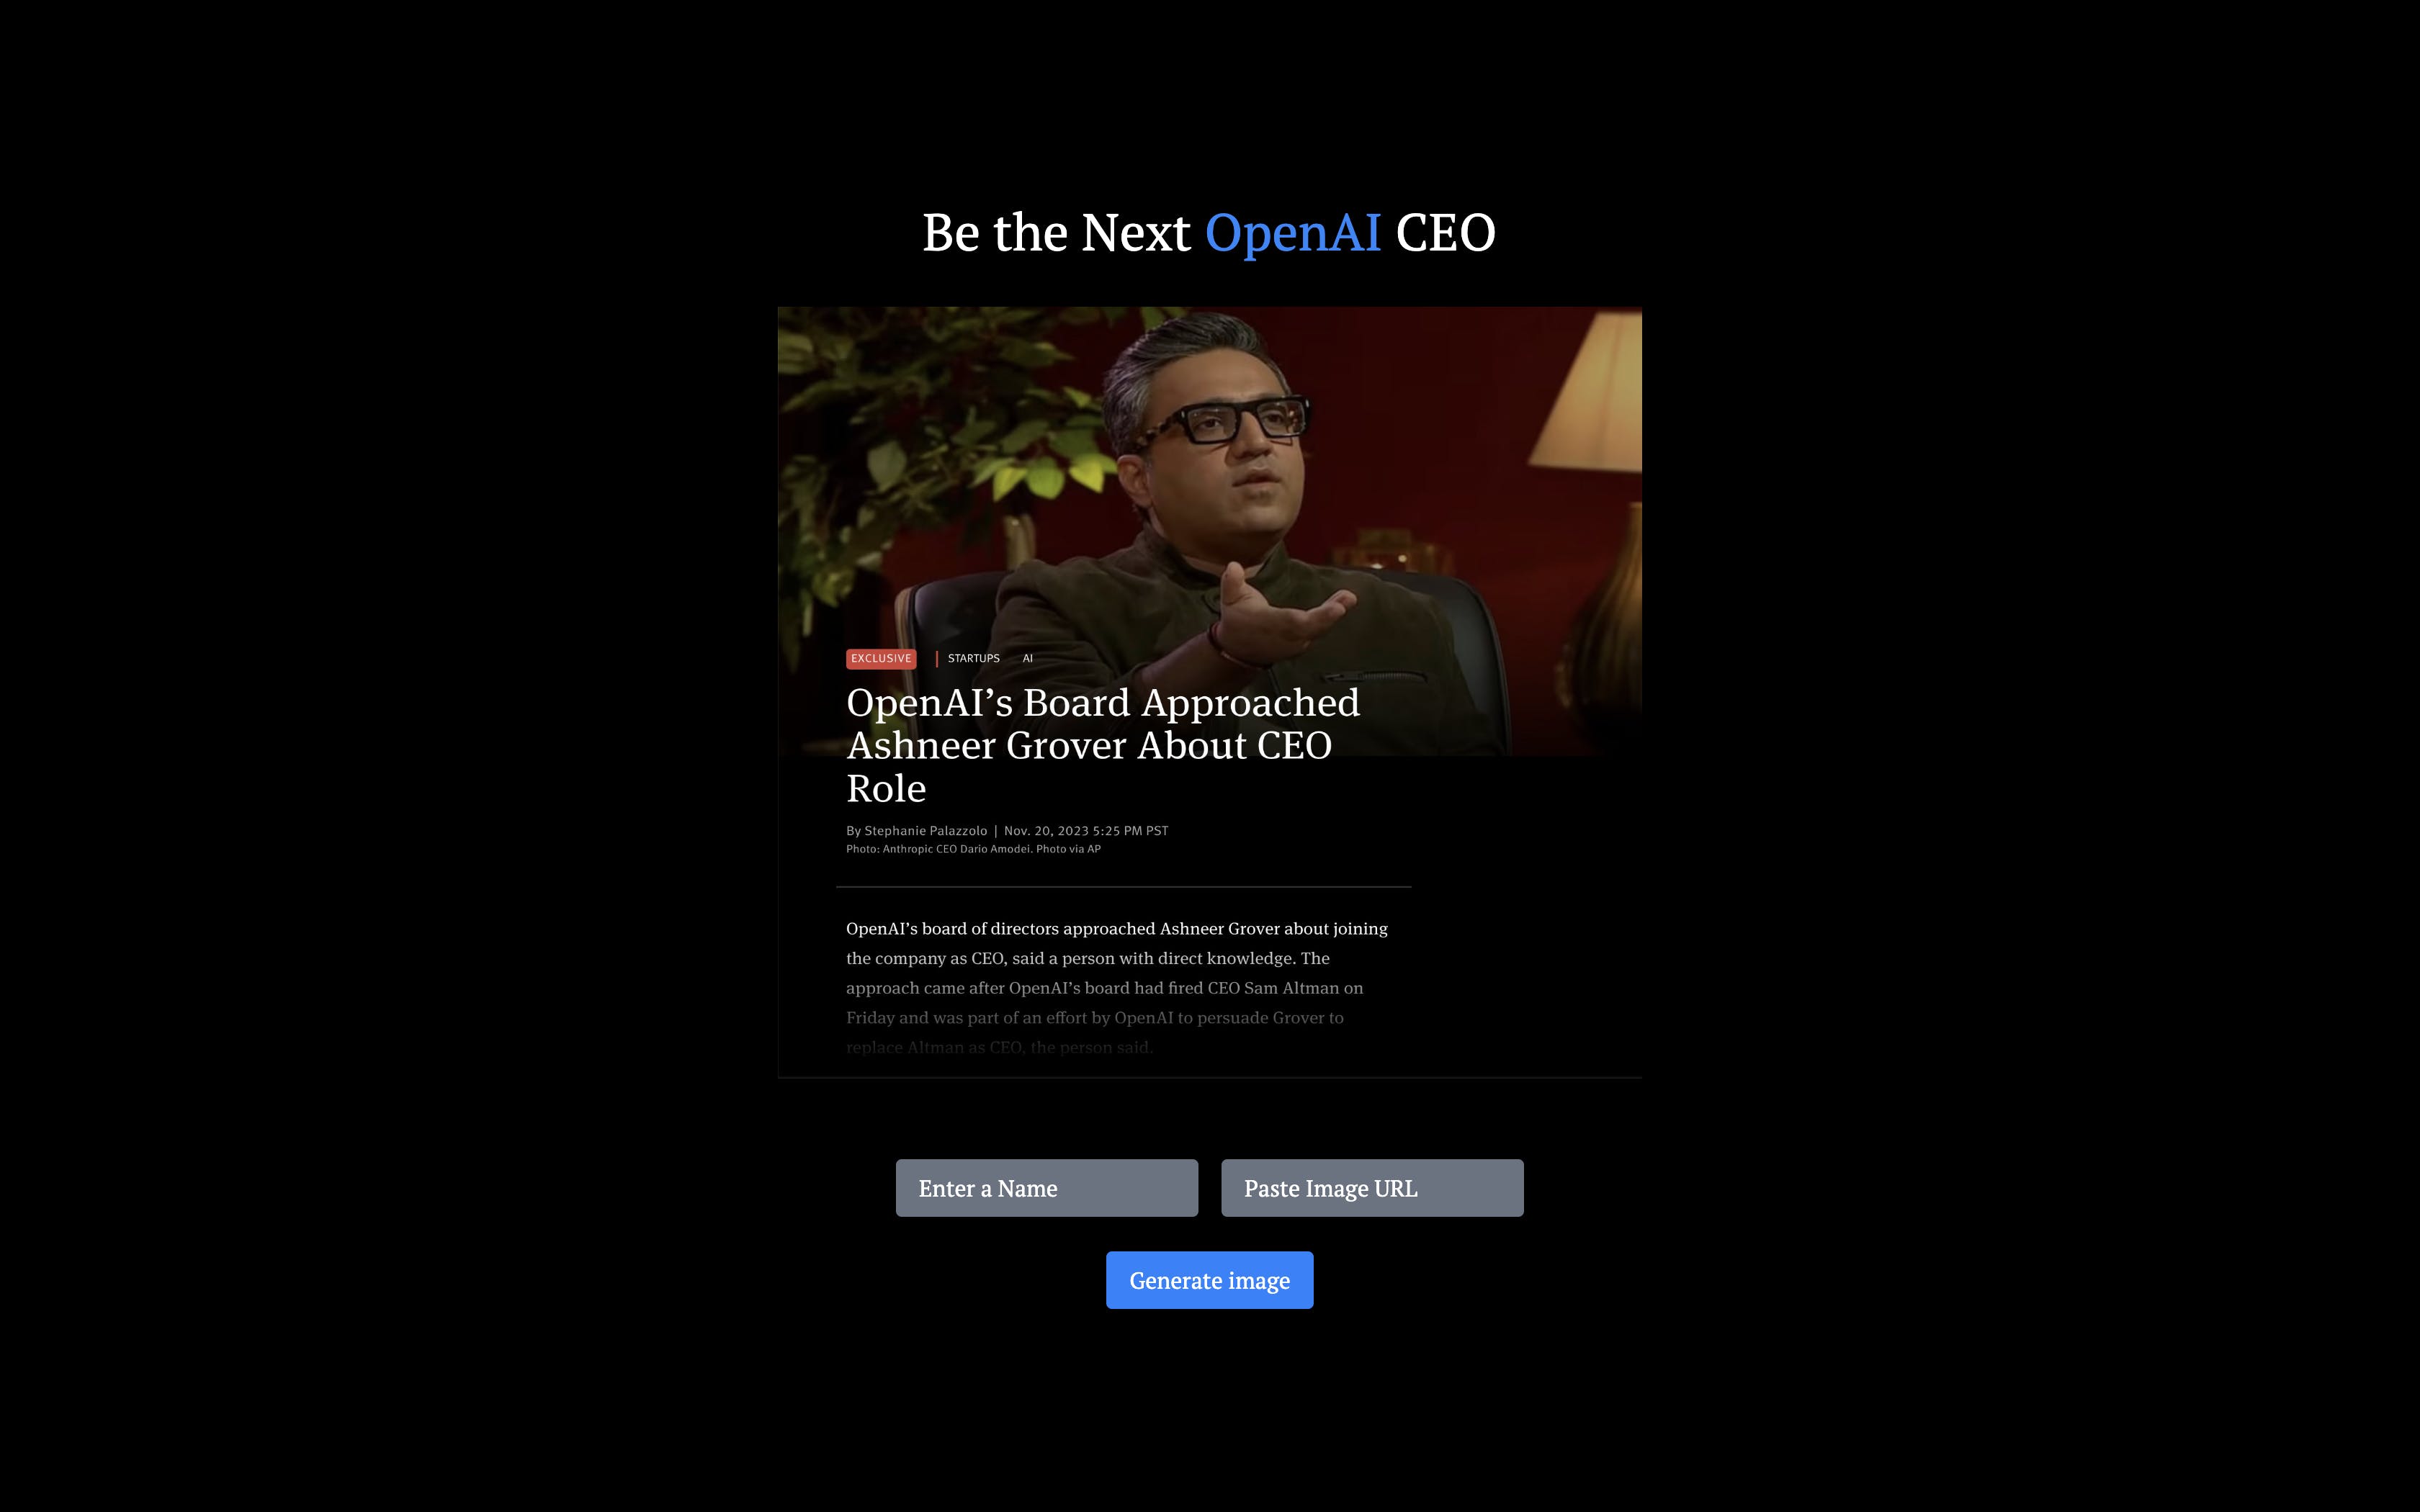 Next Open AI CEO media 1